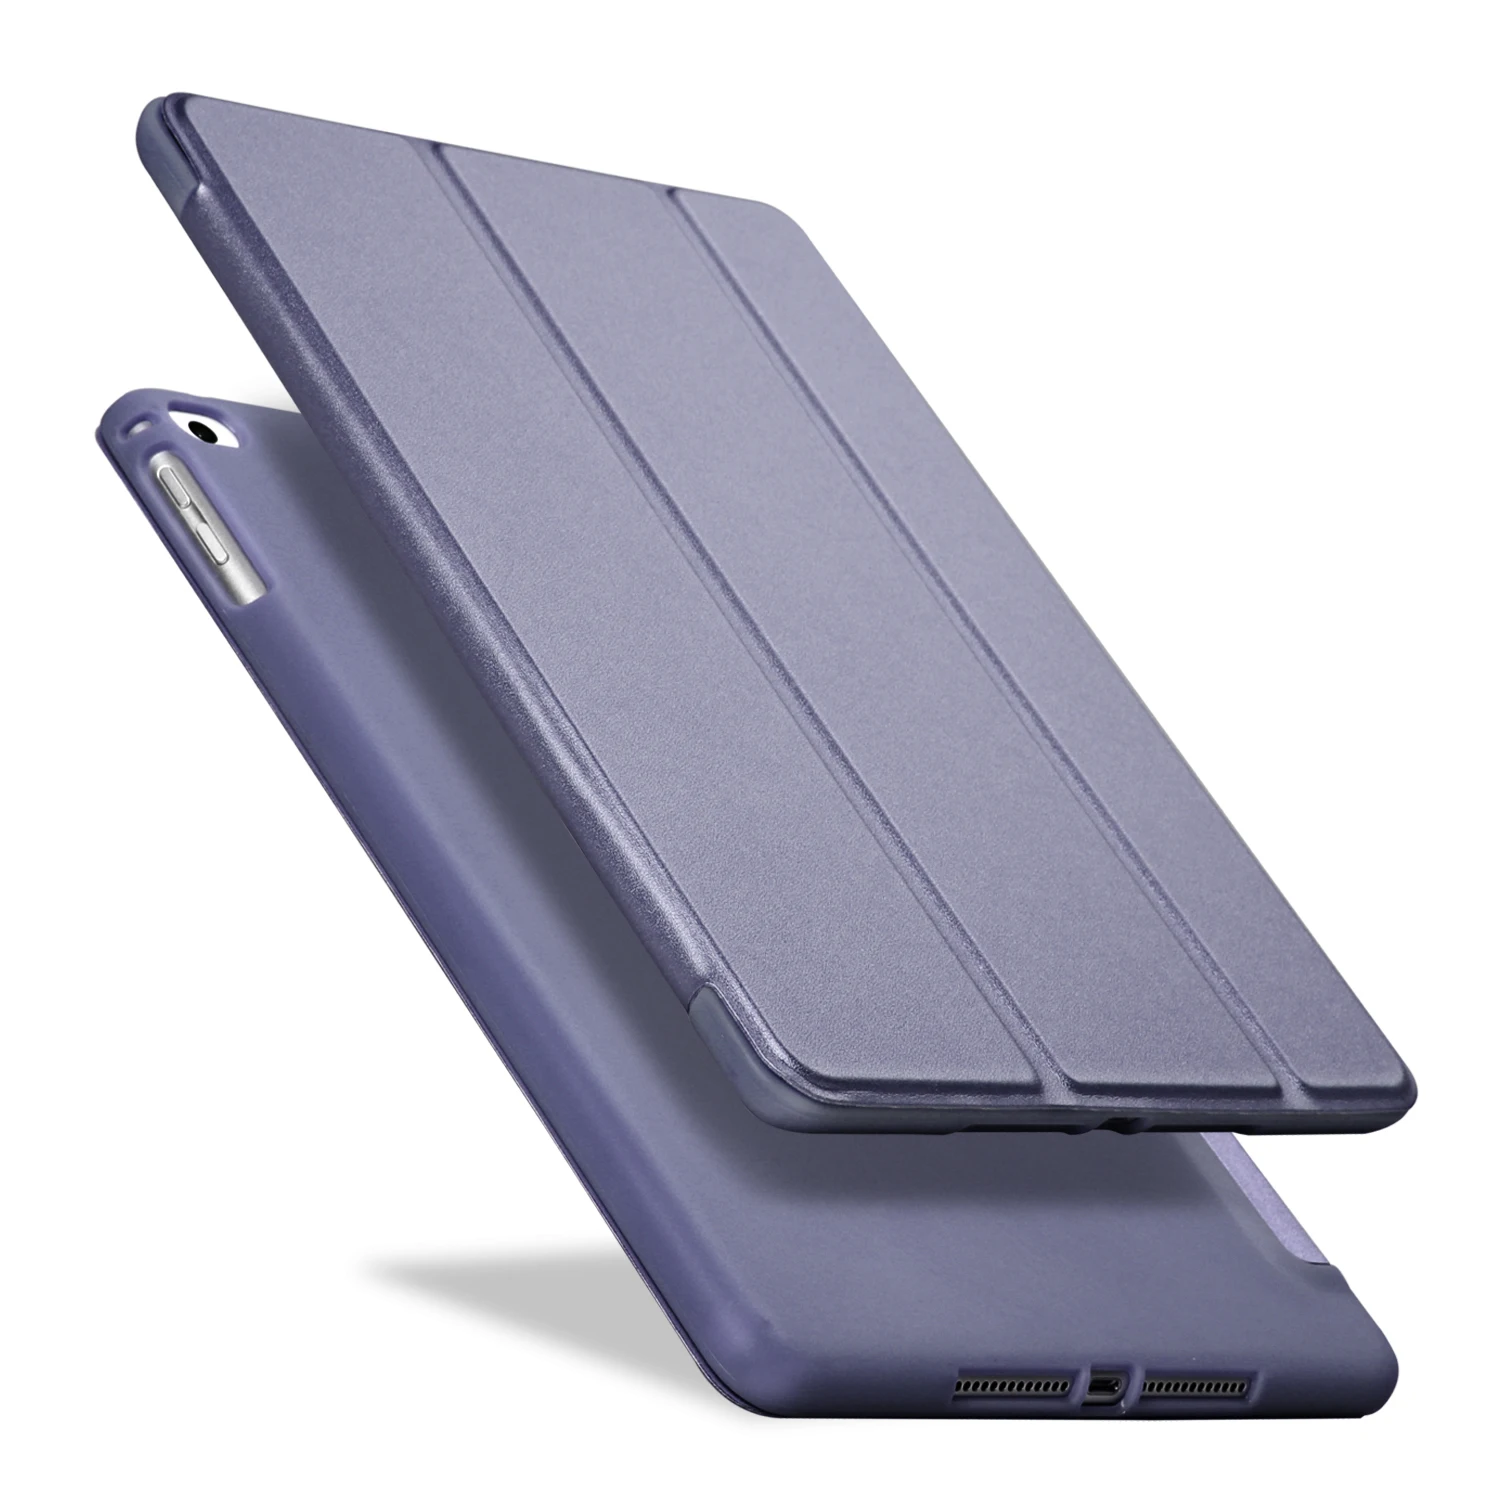 PFHEU Чехол для iPad 9,7 / A1822 A1893 силиконовый мягкий чехол из искусственной кожи для iPad Air 1/Air 2 - Цвет: Dark blue